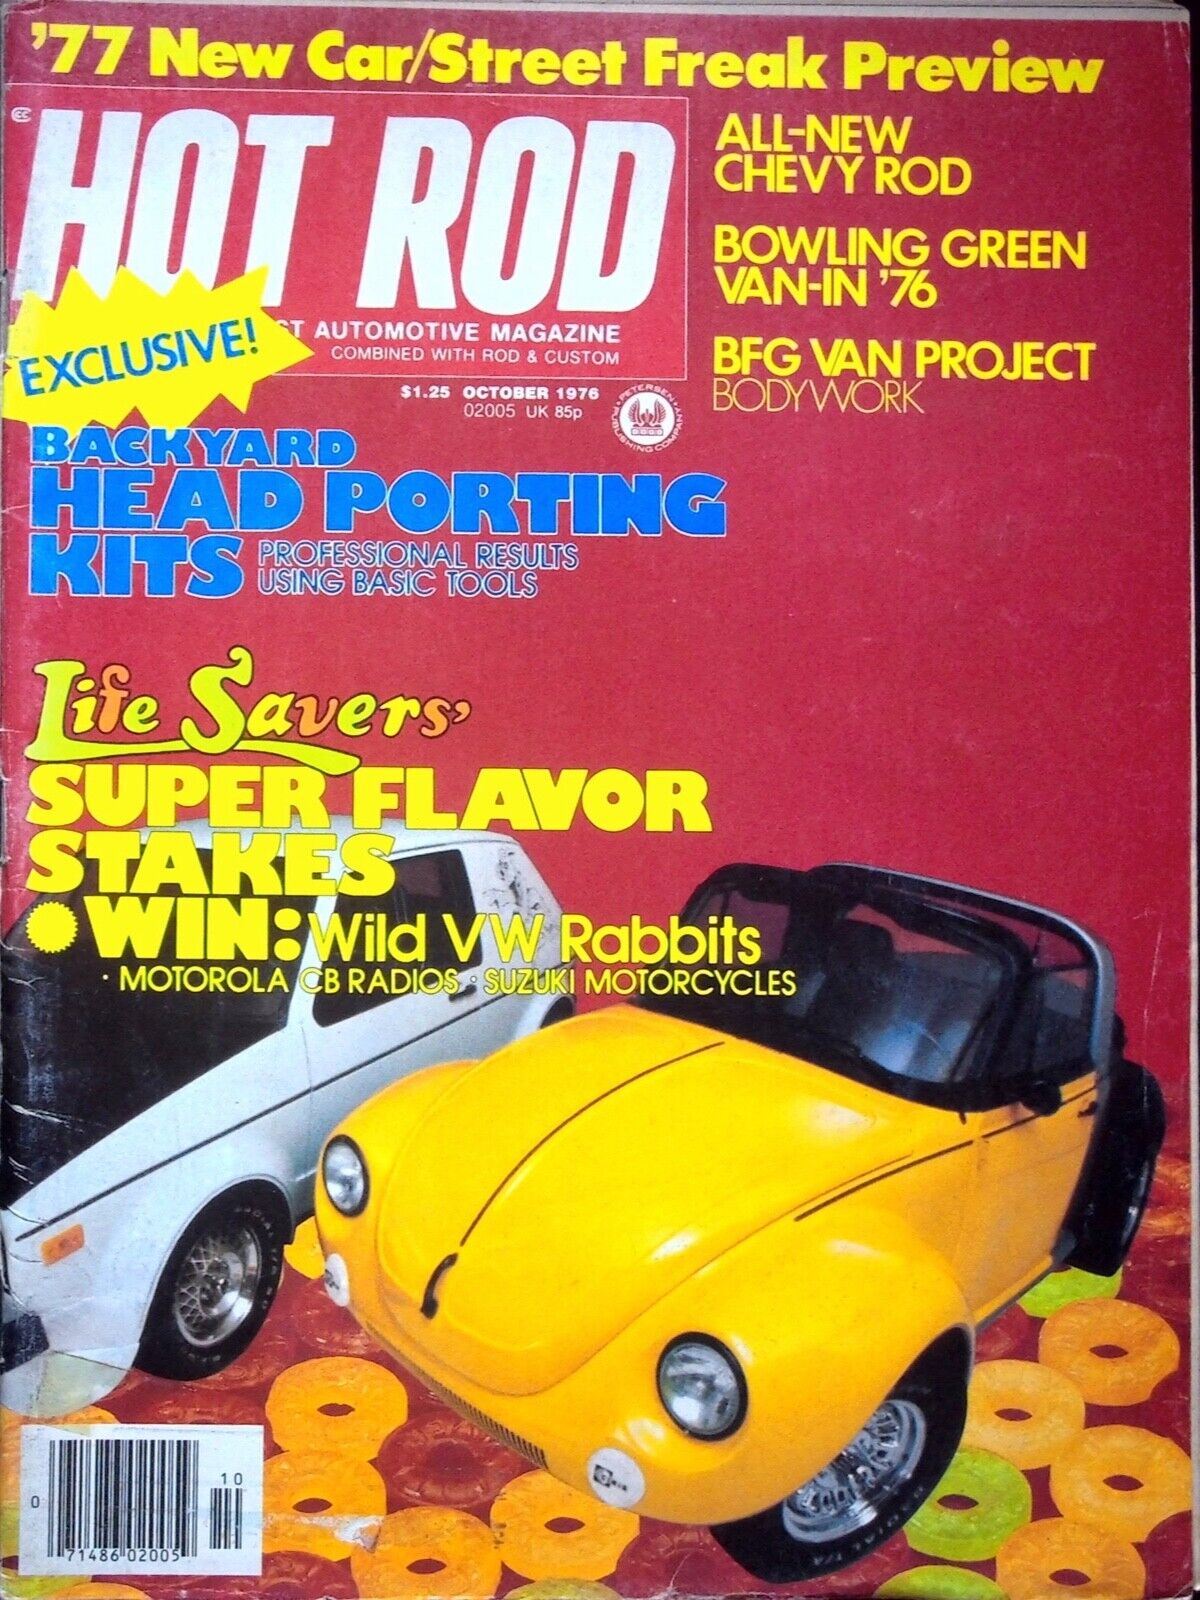 VW RABBITS - HOT ROD MAGAZINE, OCTOBER 1976 VOLUME 29 NUMBER 10 VINTAGE